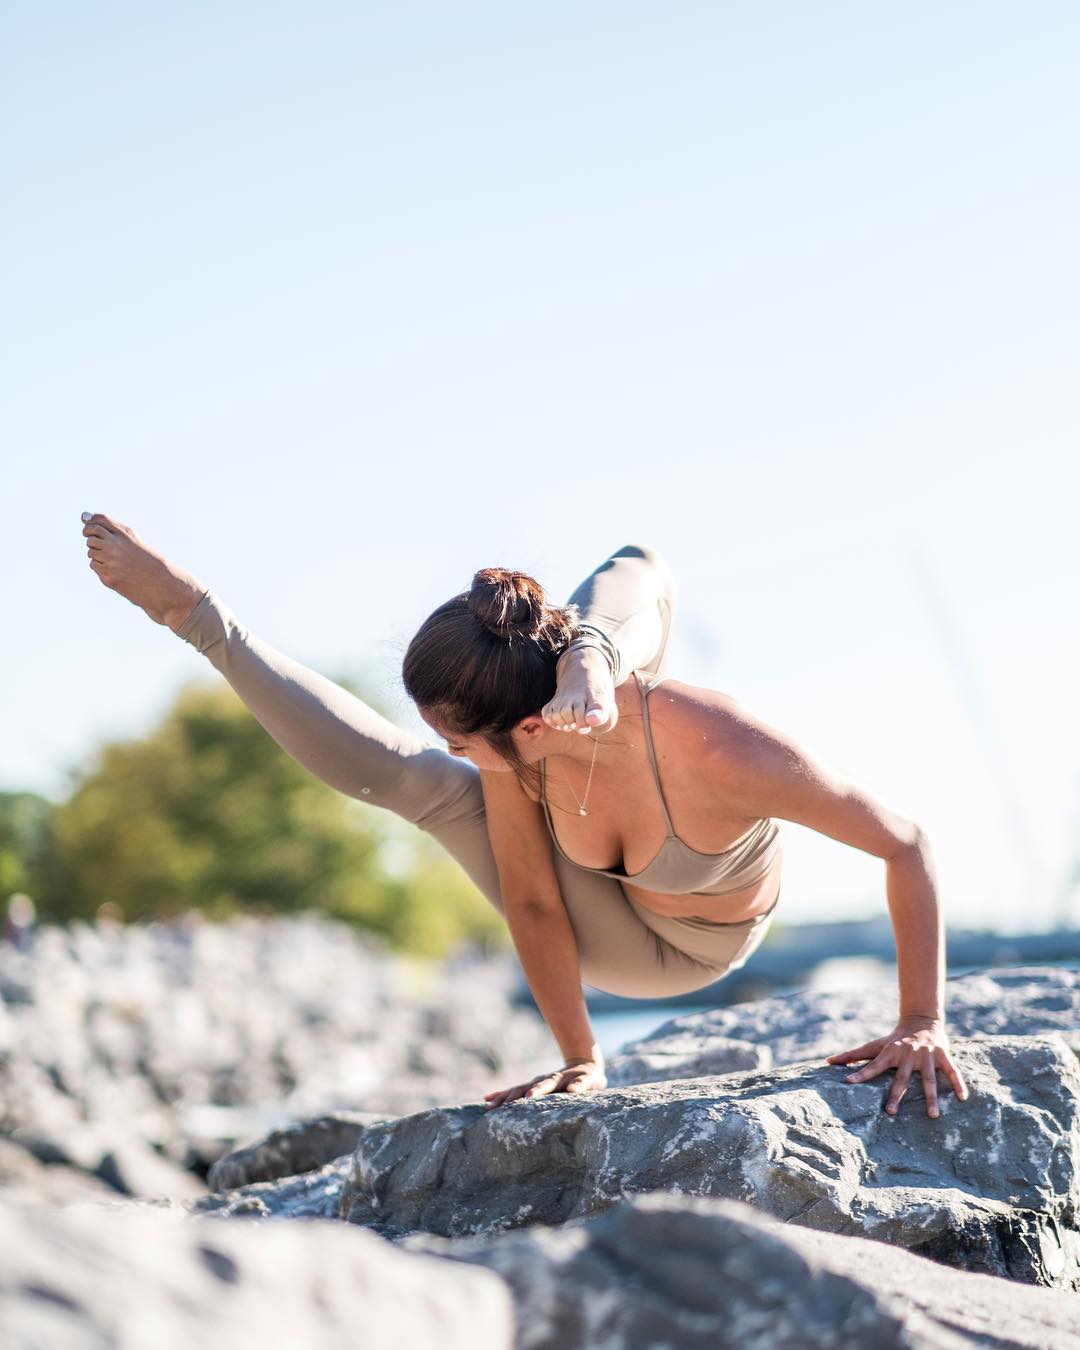 10 tài khoản Instagram truyền cảm hứng cho các tín đồ Yoga